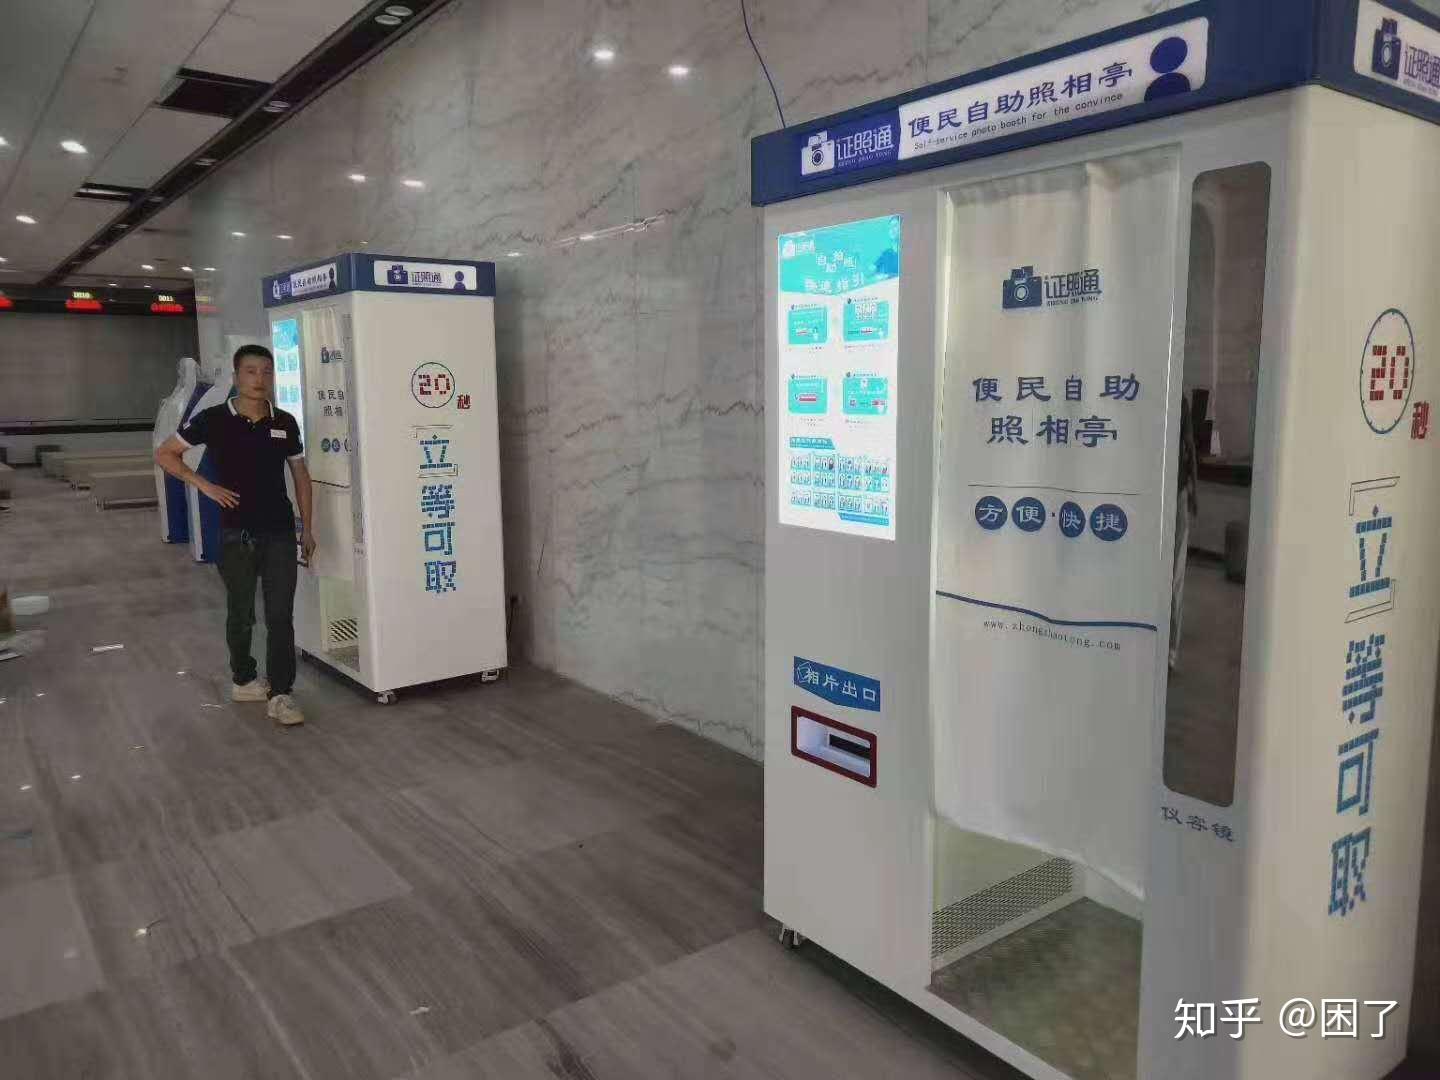 南京地铁自助拍证件照图片